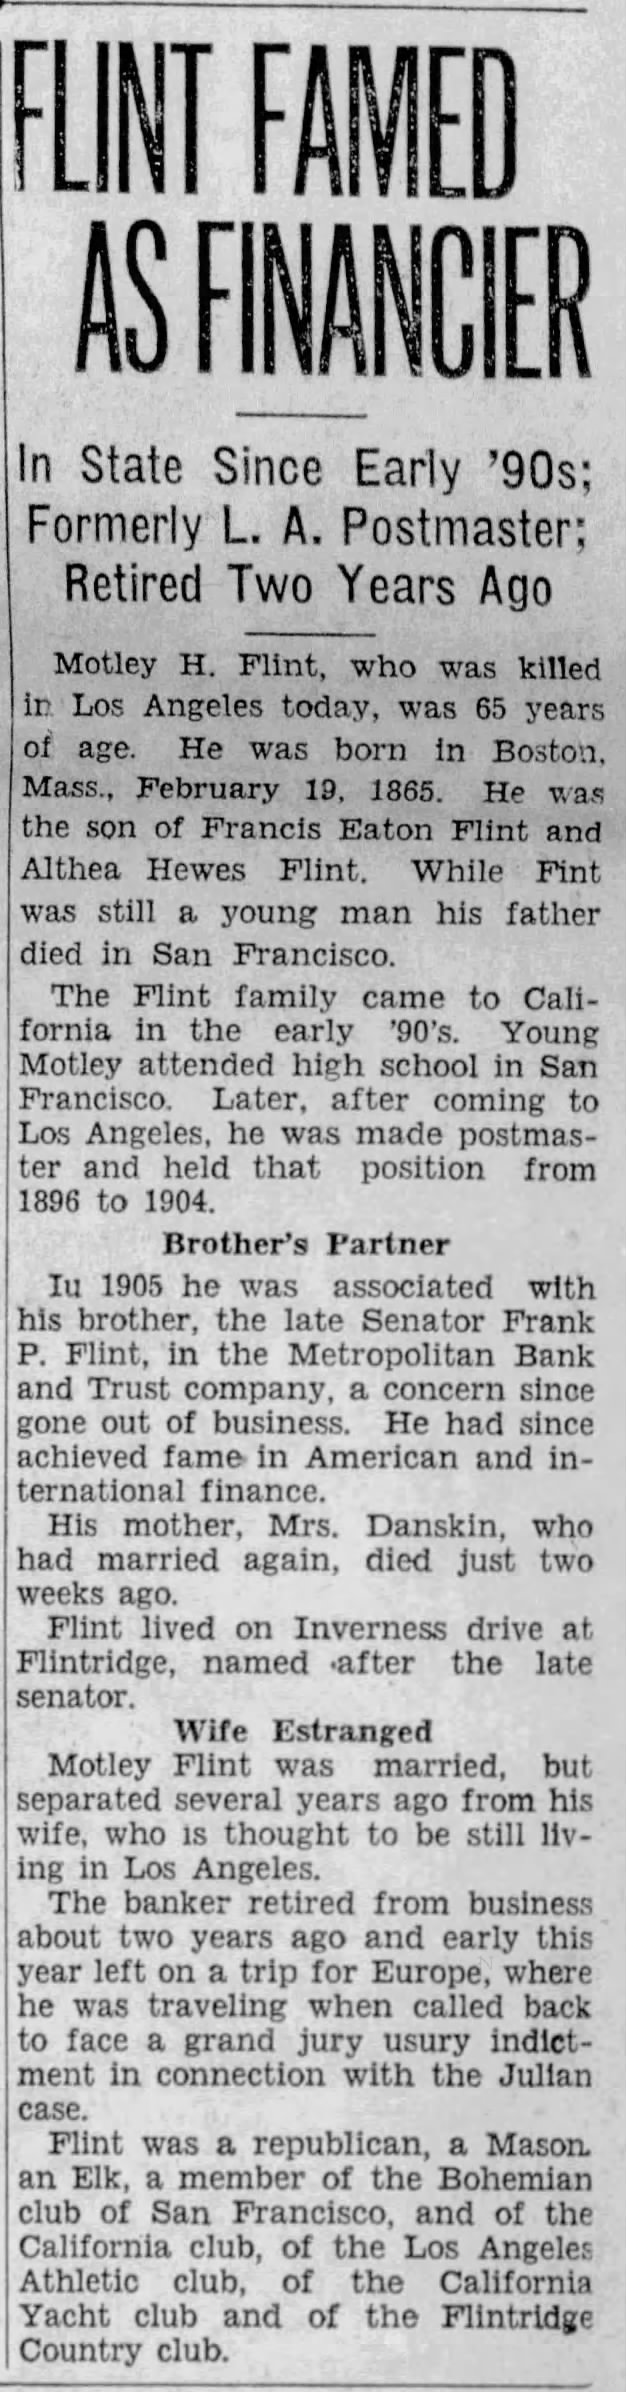 Flint Famed As Financier; 14 Jul 1930; The Pasadena Post; 1